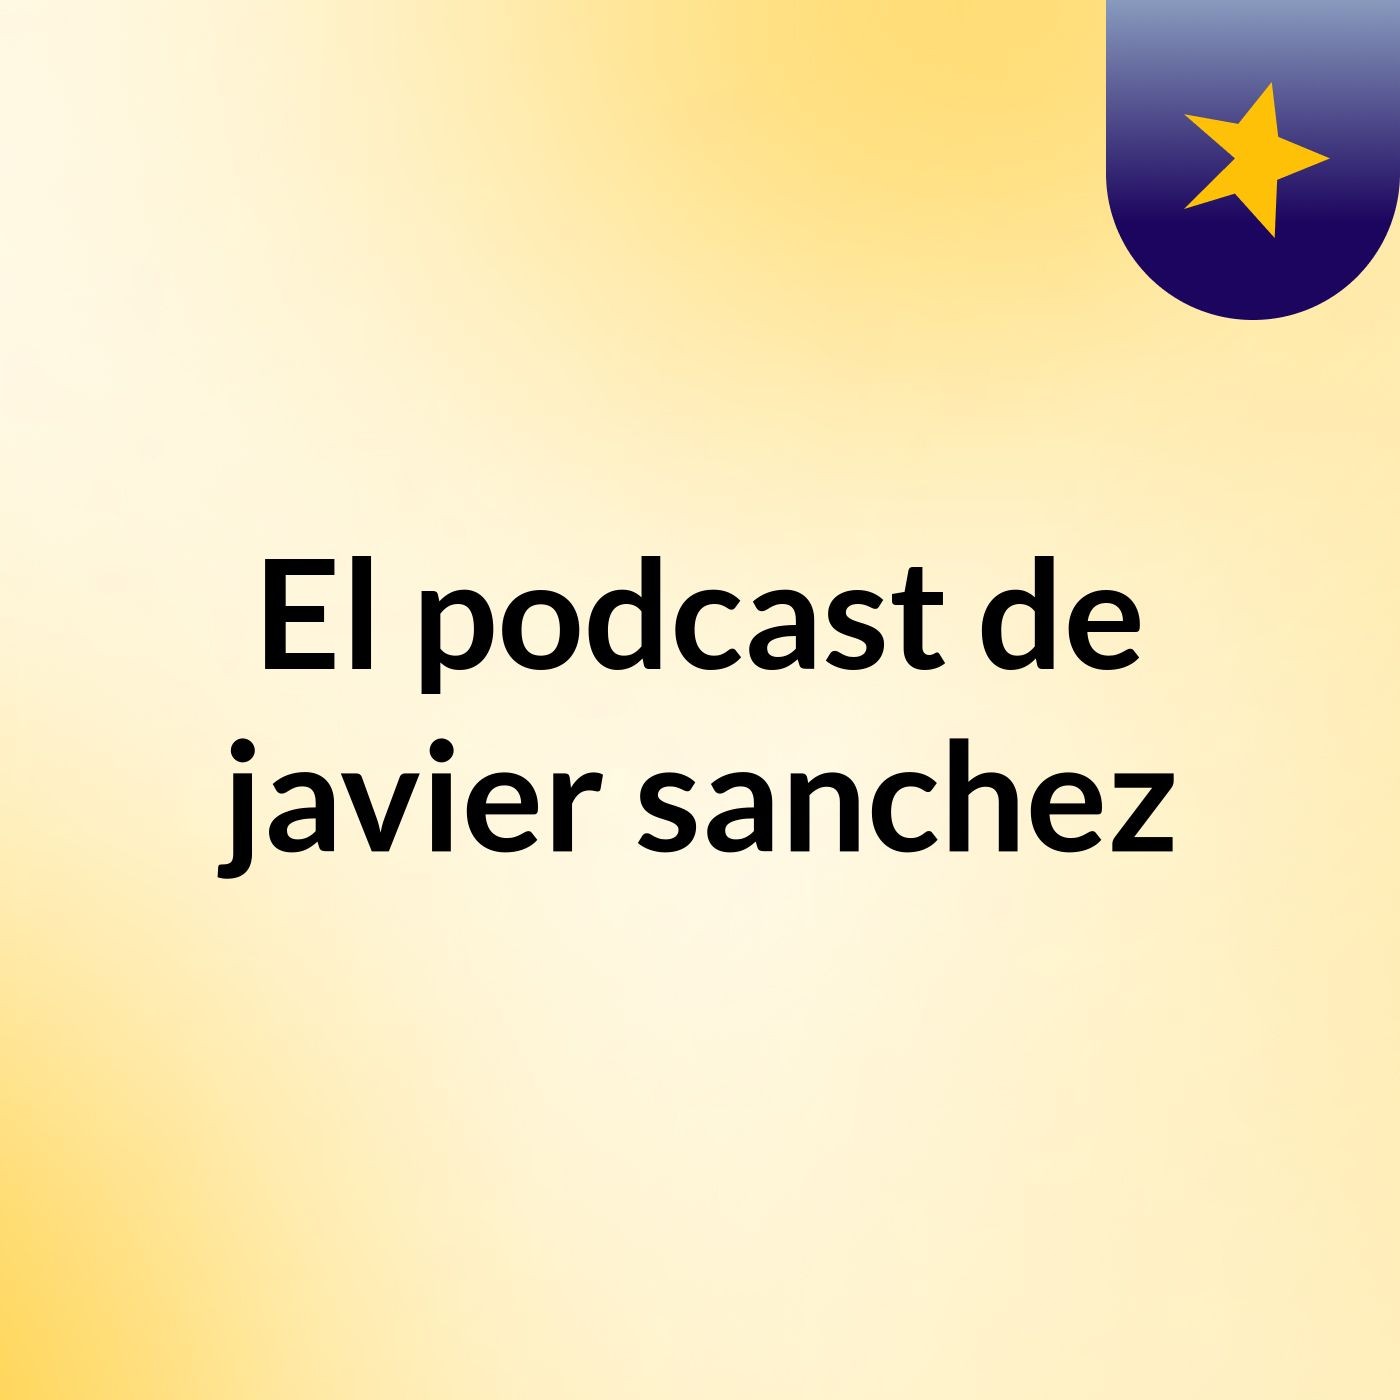 El podcast de javier sanchez